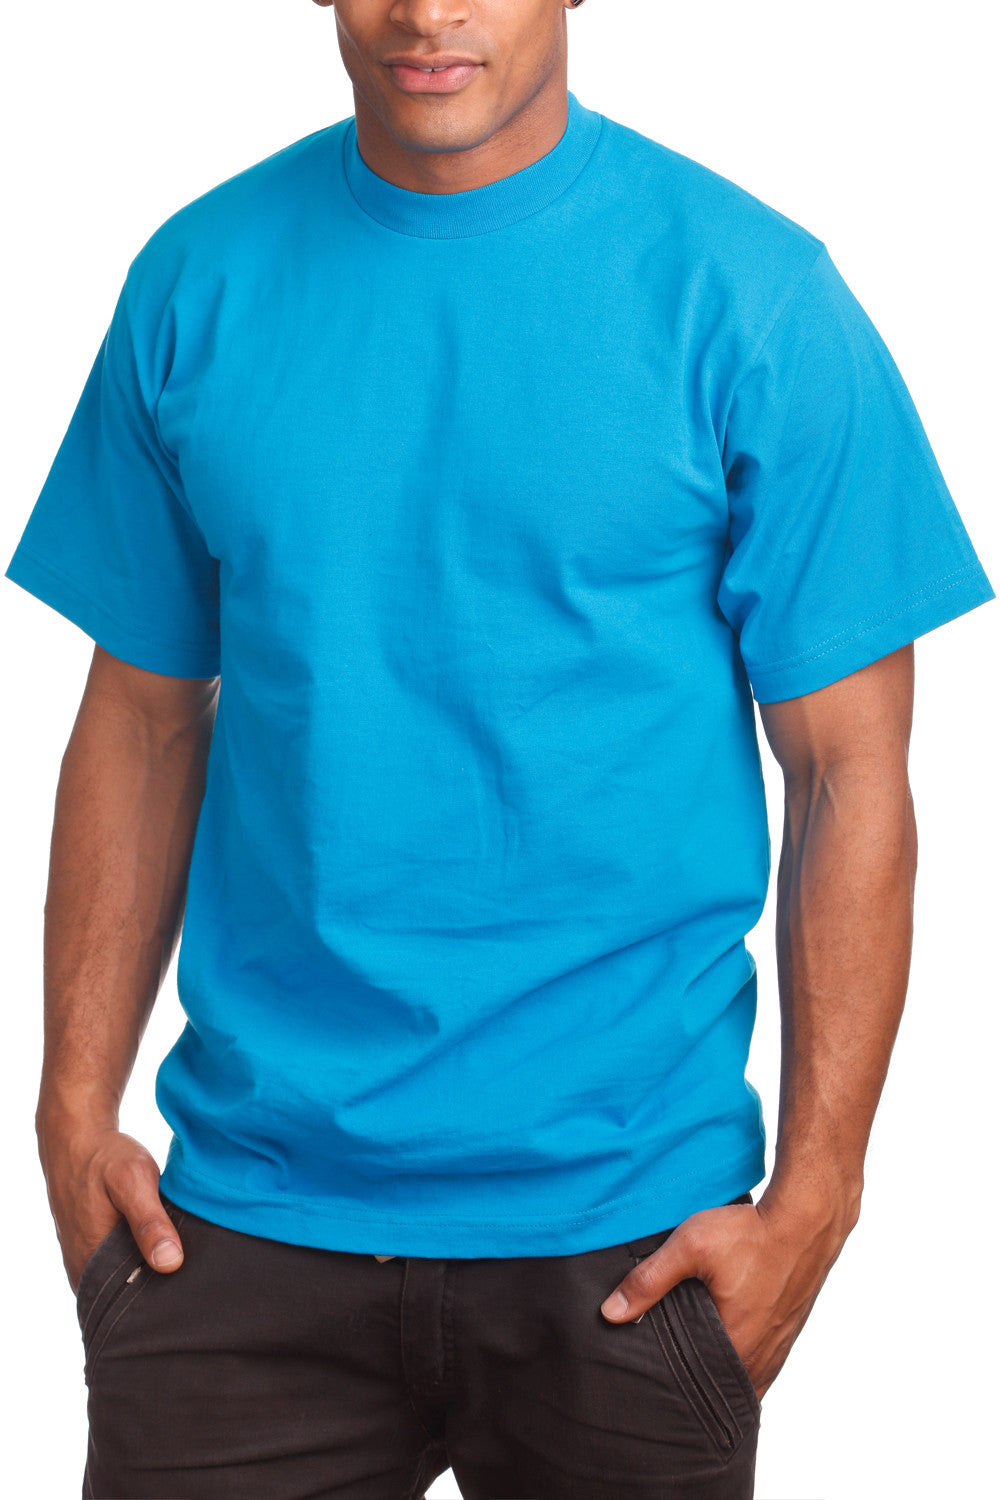 V-Neck / Teal T-Shirt